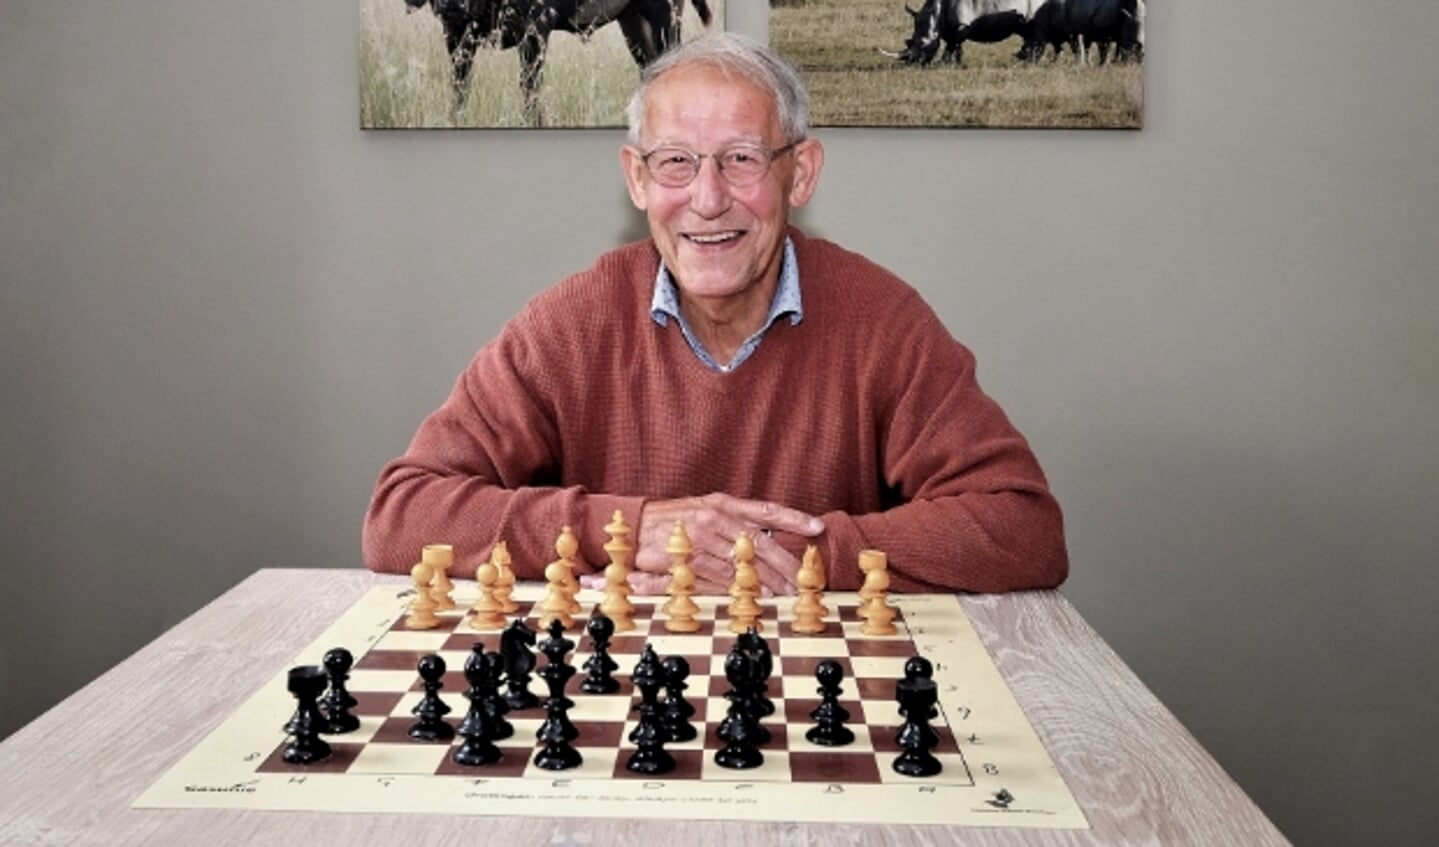 Geurt van Veenendaal achter het schaakbord met de 64 velden.